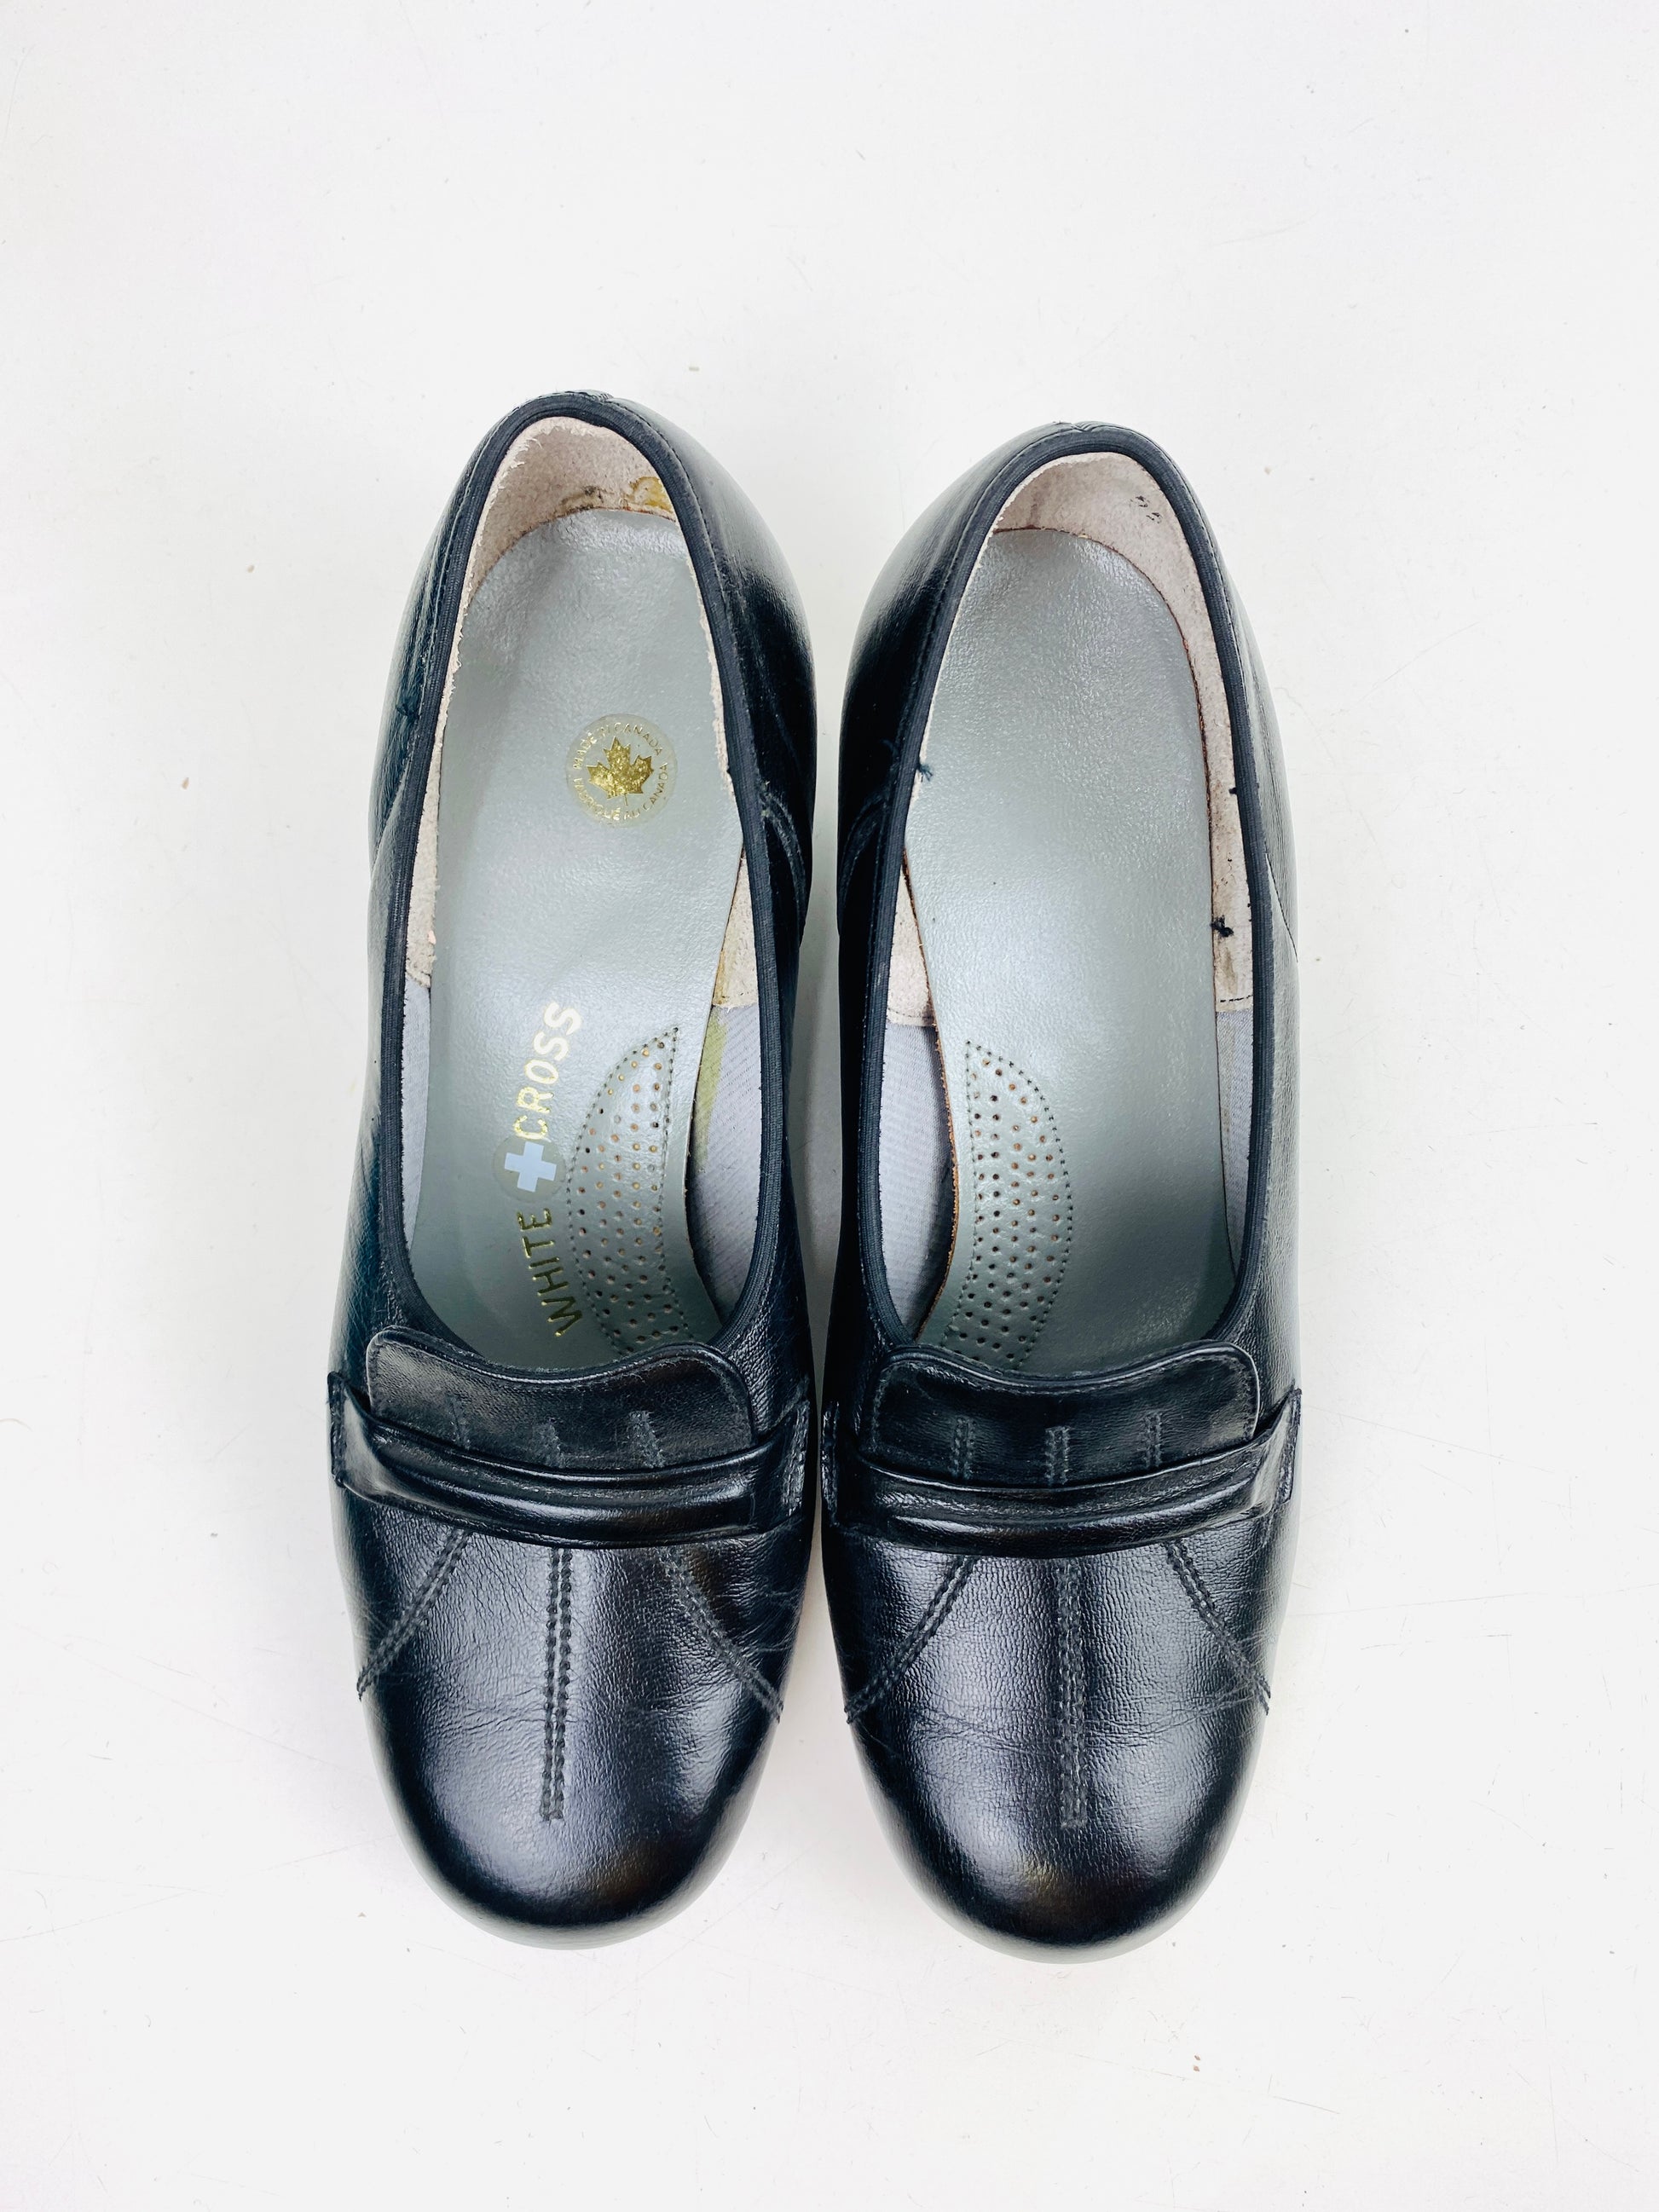 Vintage Deadstock Shoes, Women's 1980s Black Leather Pump's, Cuban Heels, NOS, 6506